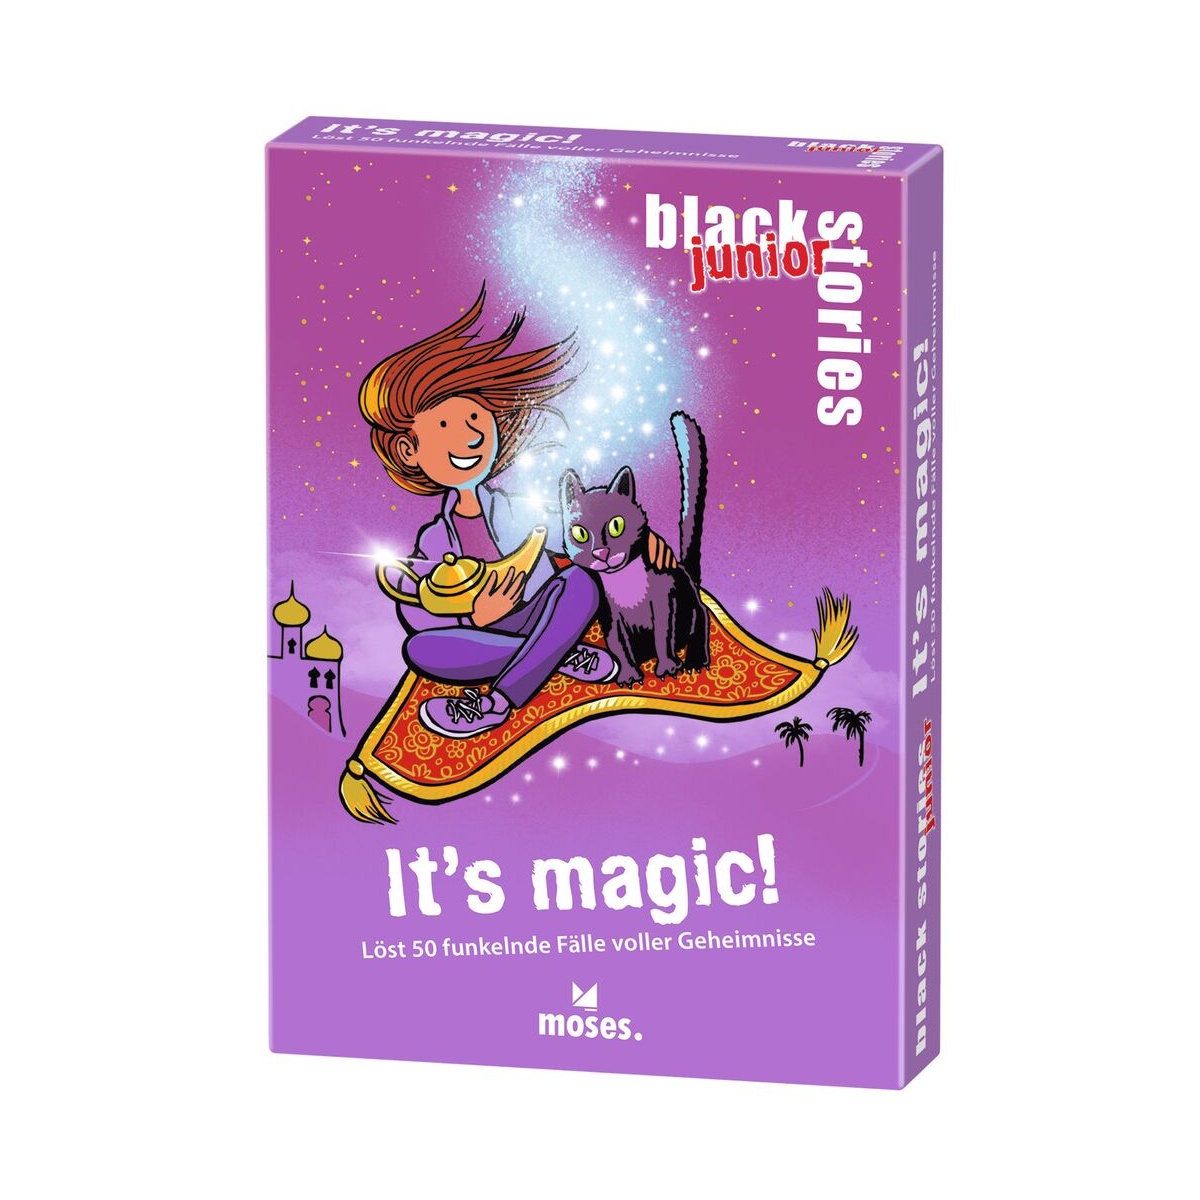 Black Stories junior Its magic! von Moses